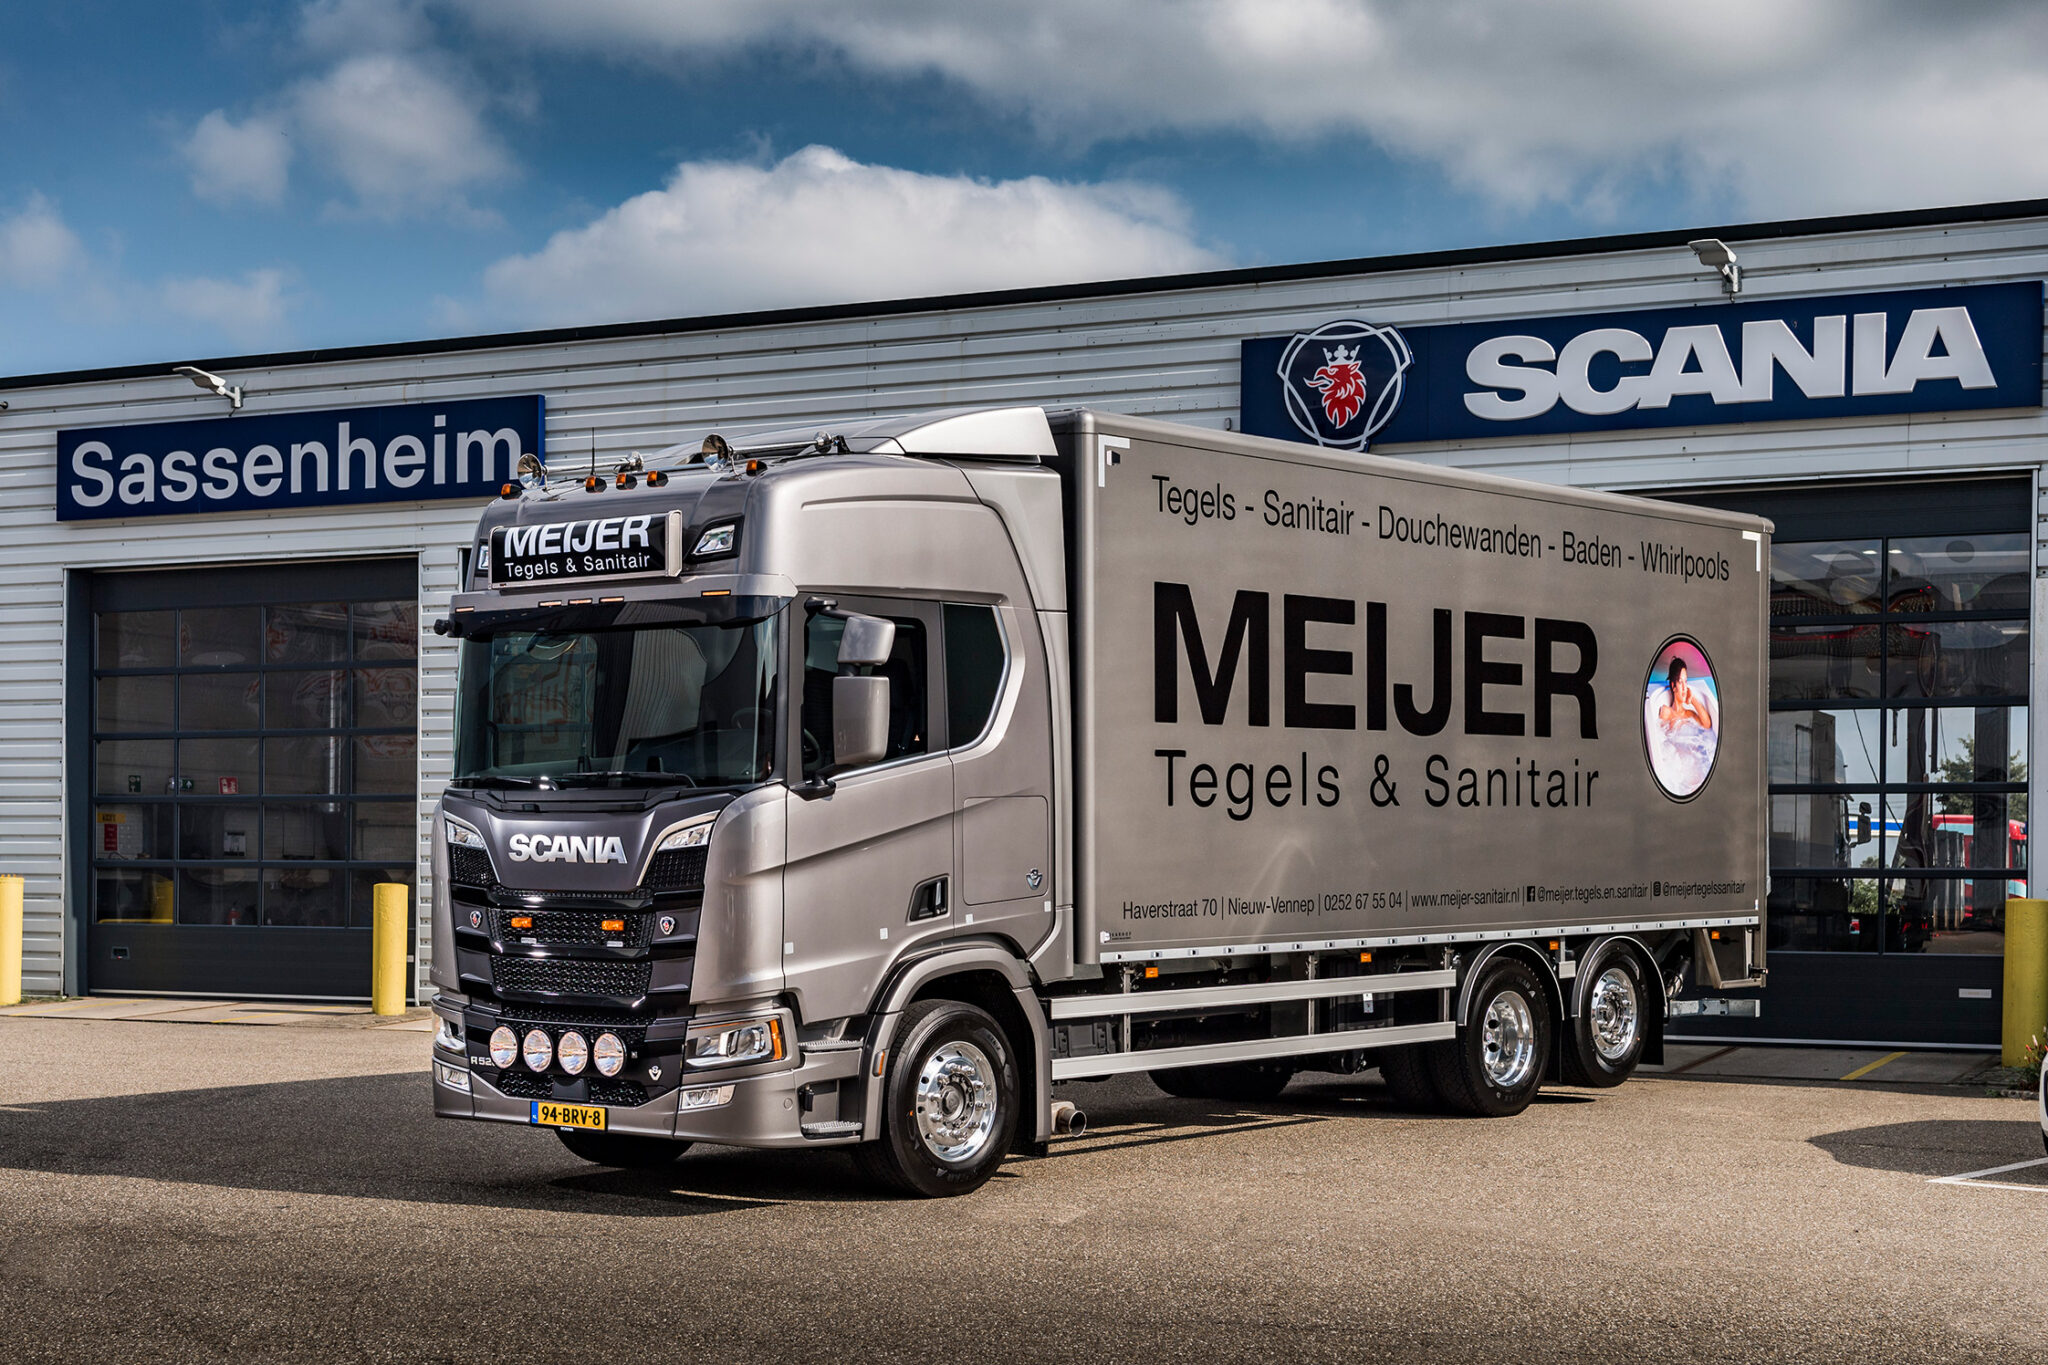 Meijer Tegels & Sanitair bezorgt badkamers met een Scania V8